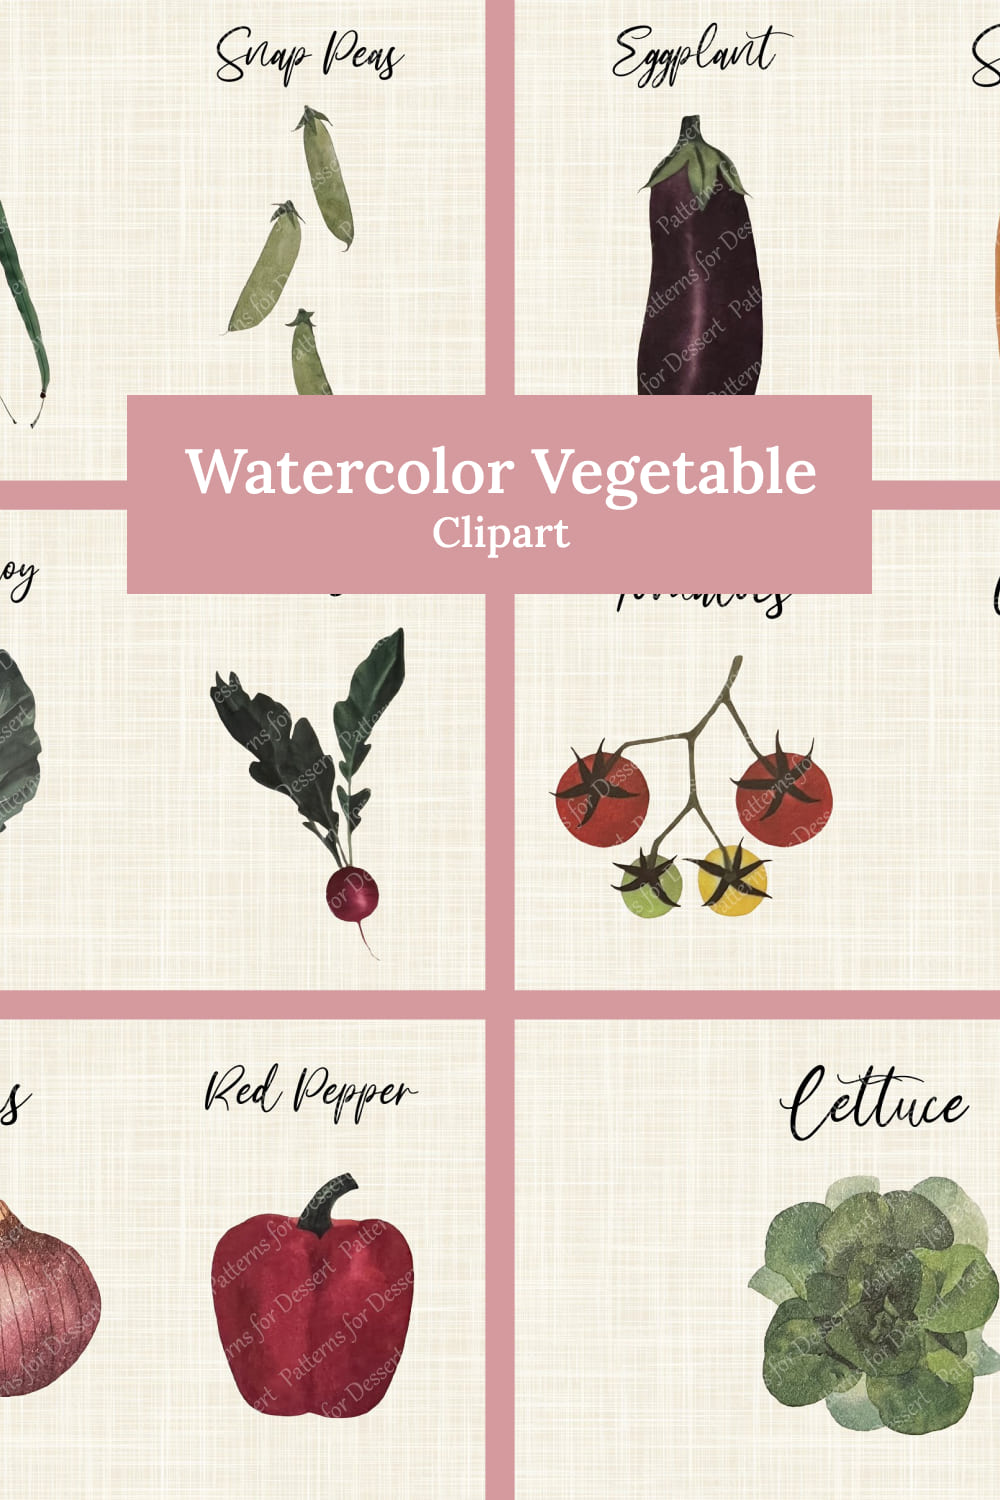 Watercolor vegetable clip art - pinterest image preview.